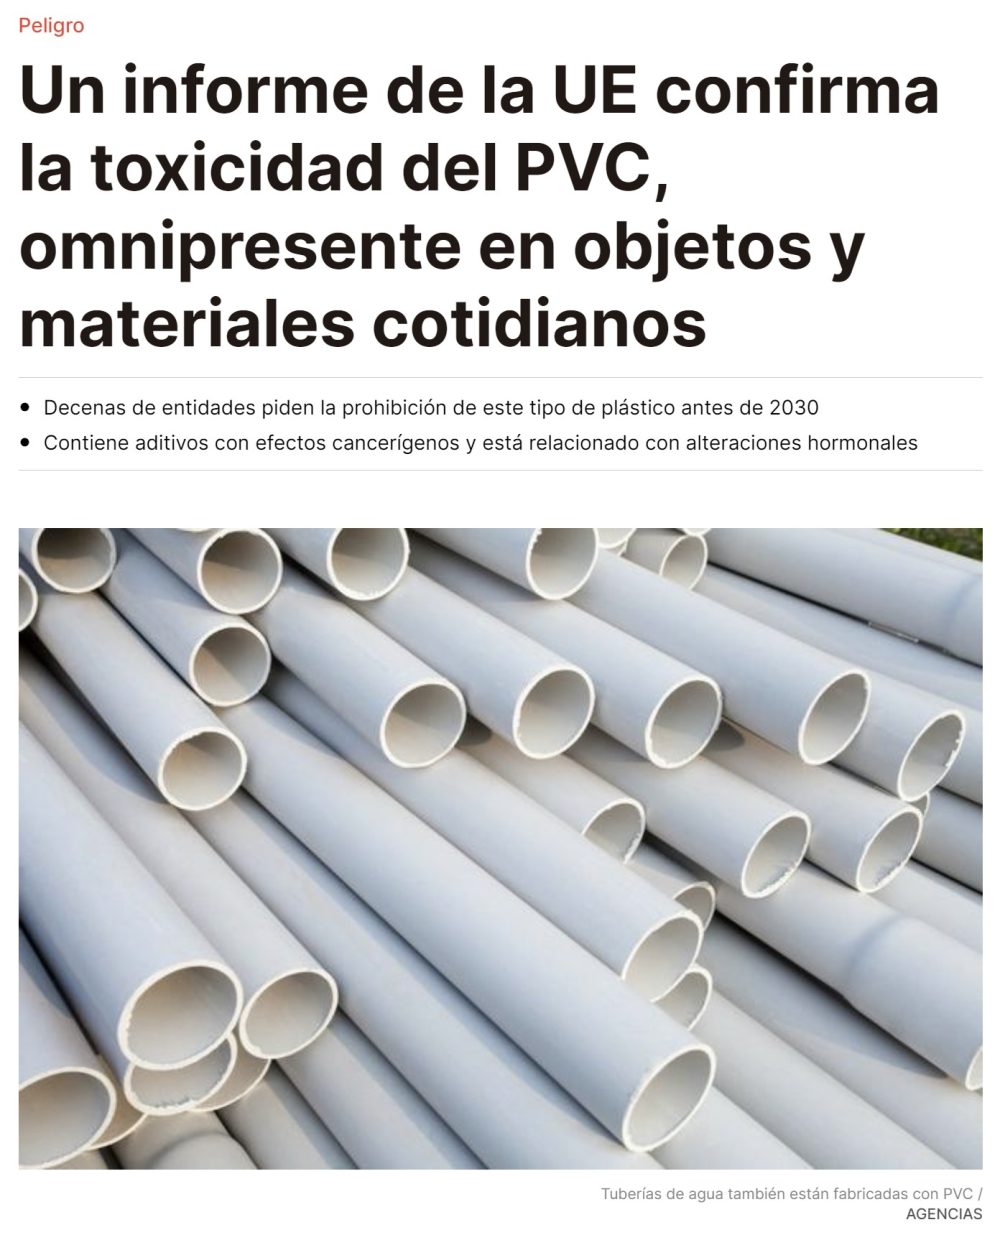 Piden eliminar el PVC antes de 2030 porque han descubierto que es TURBOTÓXICO